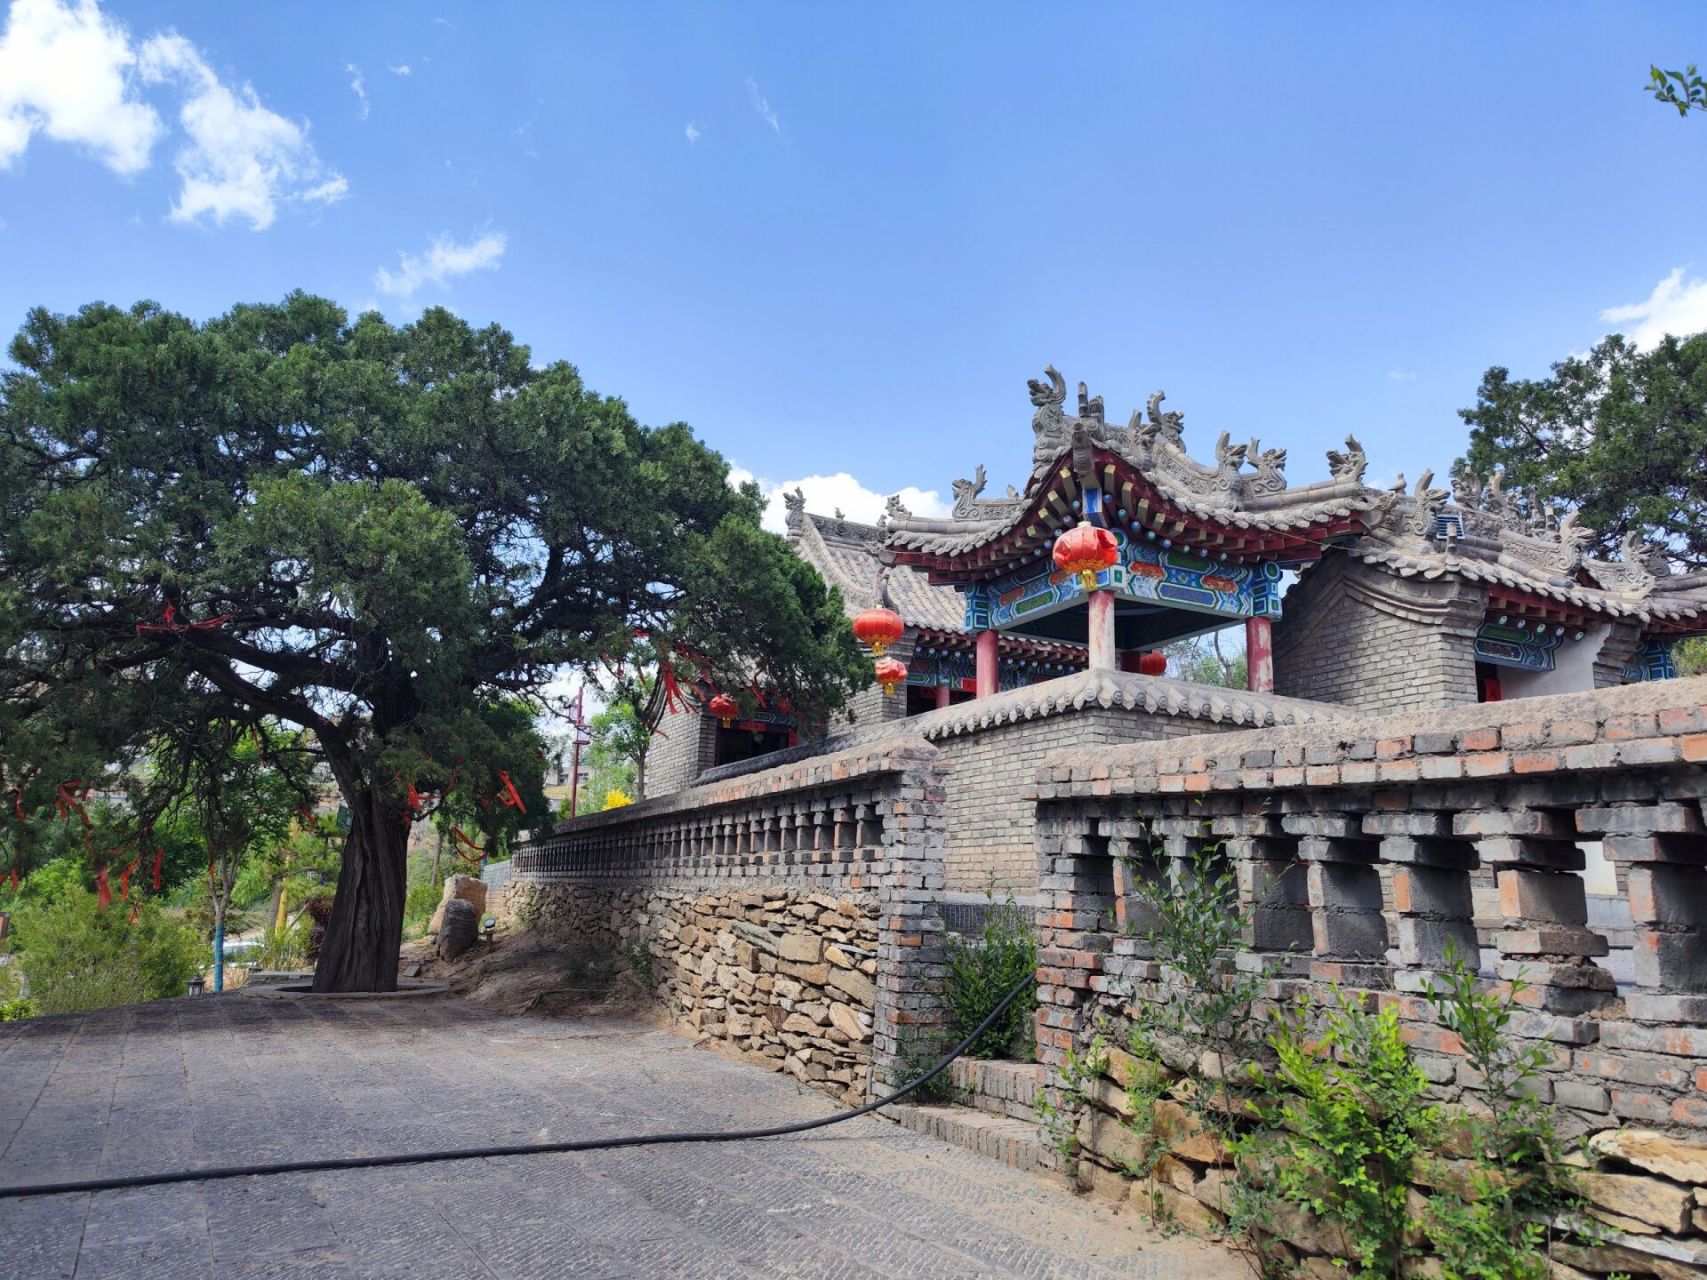 神木杨家城 神木杨家城,又名麟州故城,始建于唐代,历史悠久,是古代